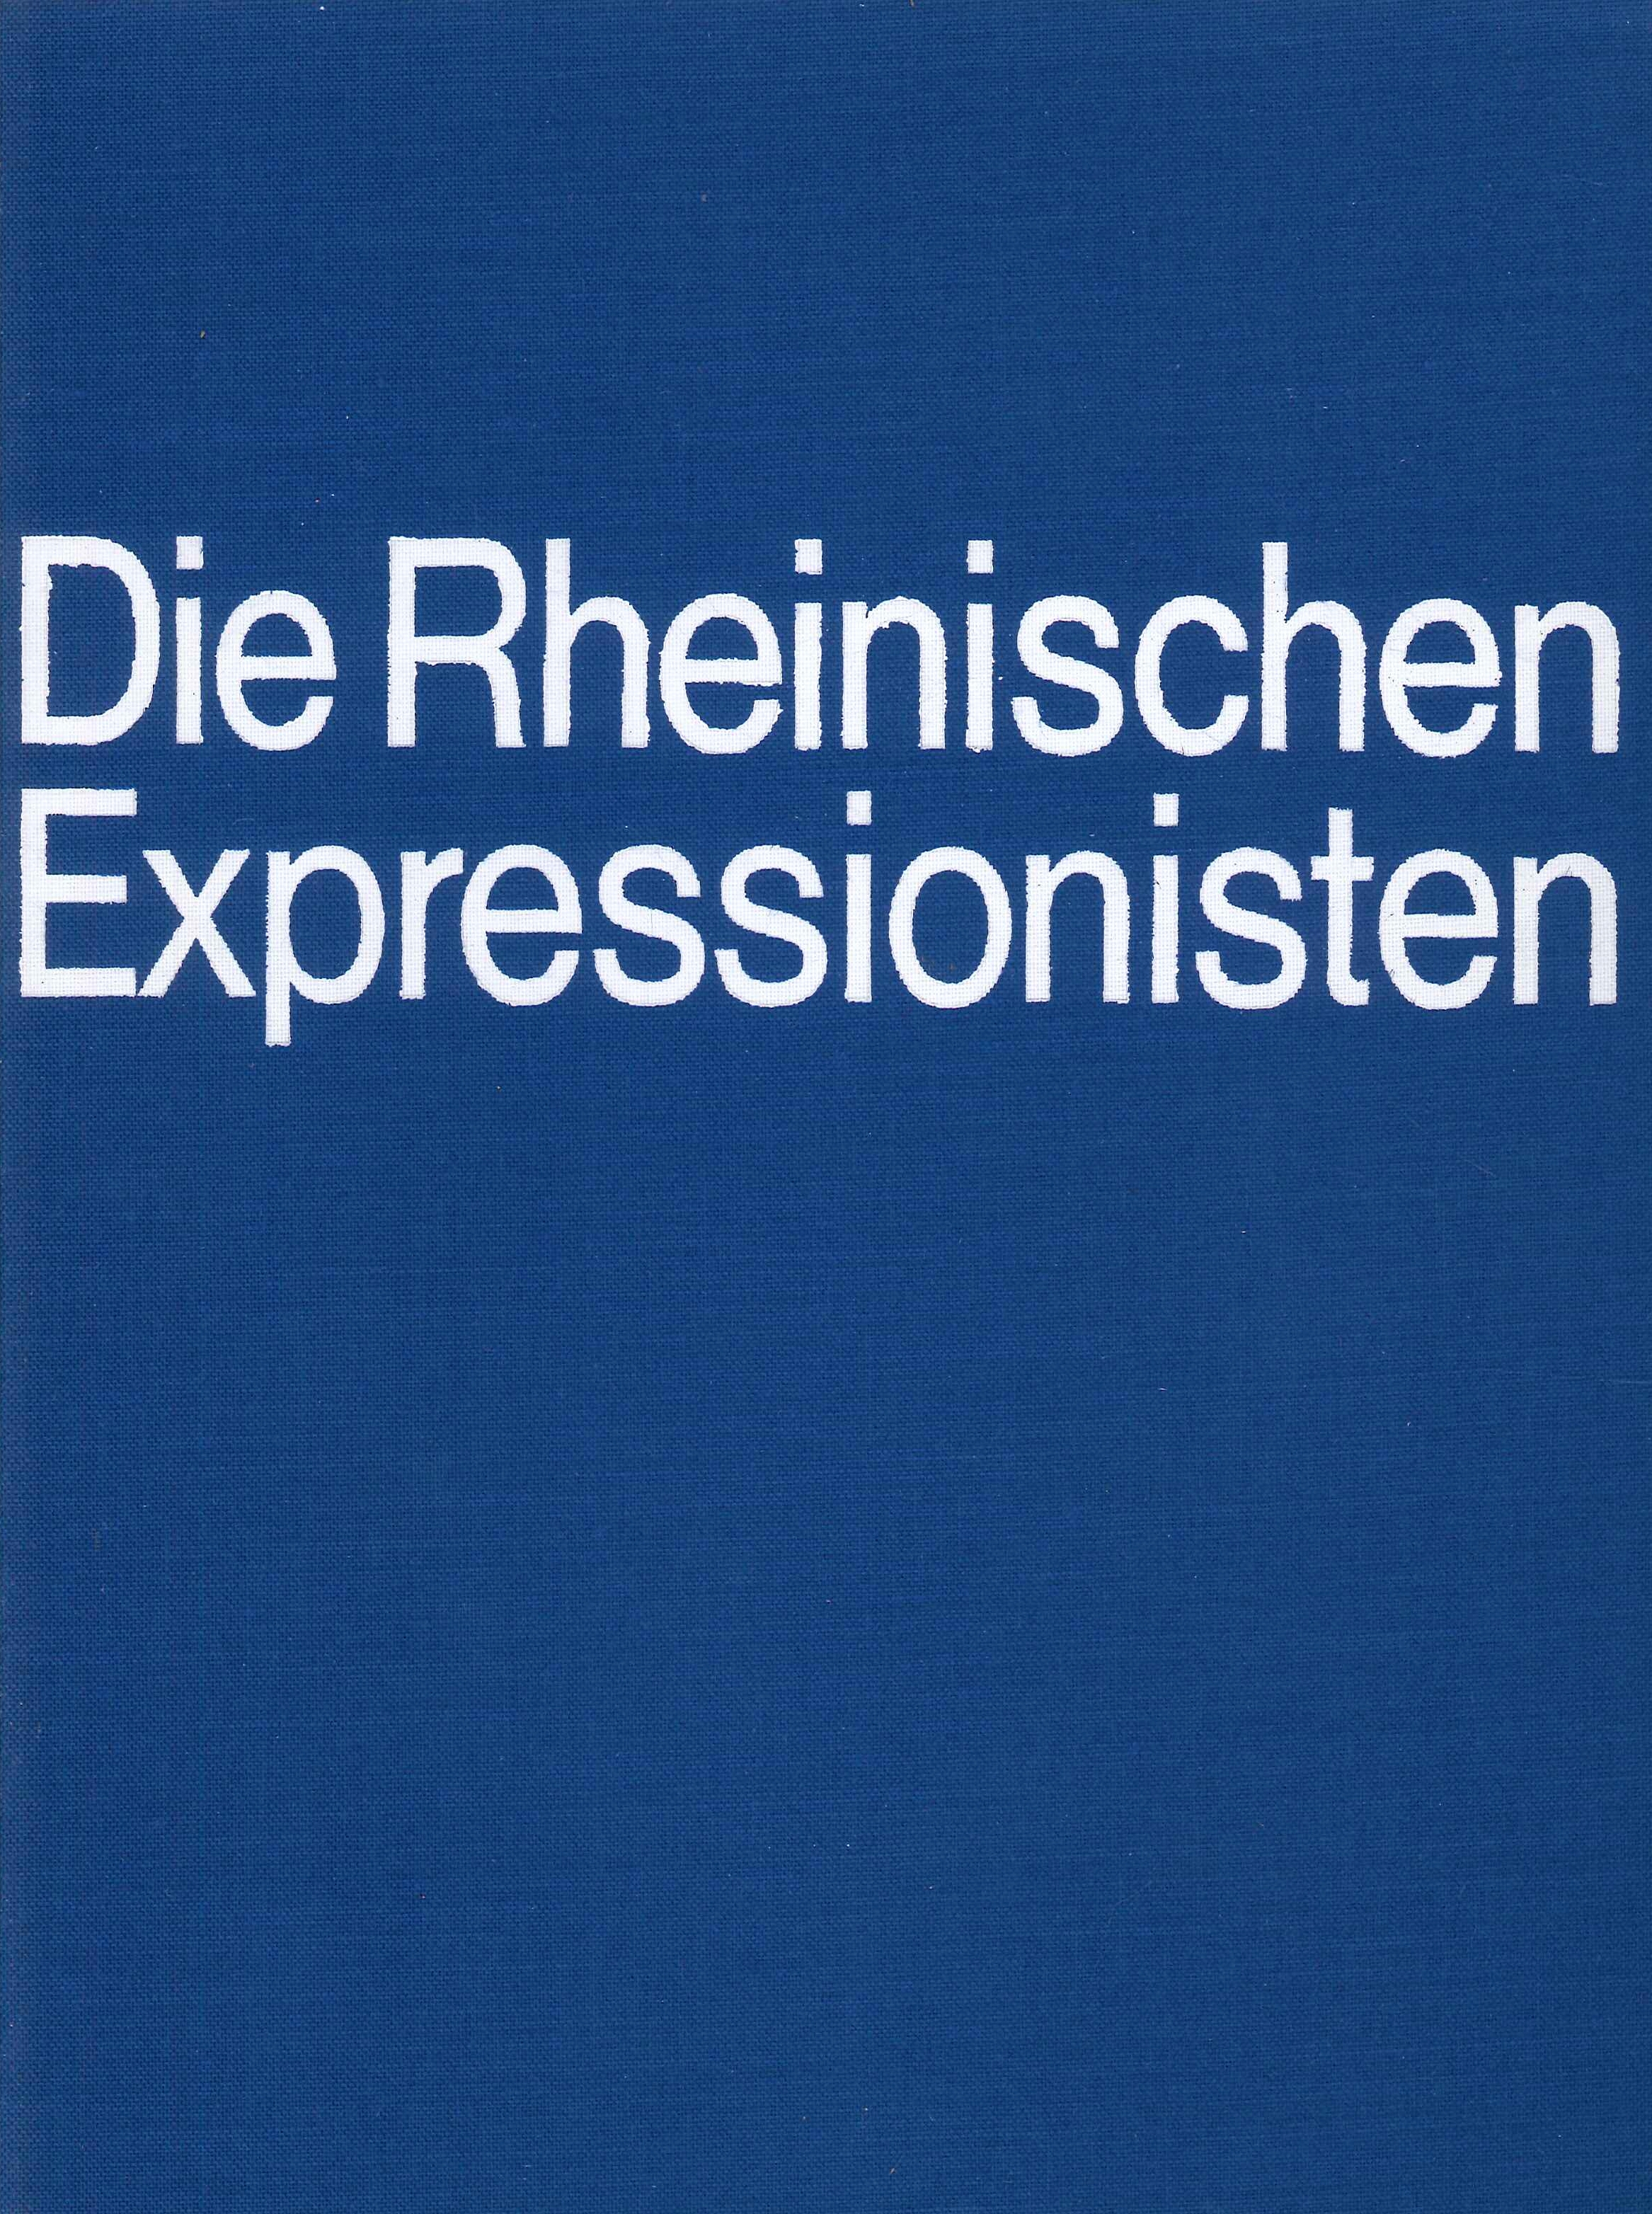 Die rheinischen Expressionisten. August Macke und seine Malerfreunde - Afbeelding 1 van 1